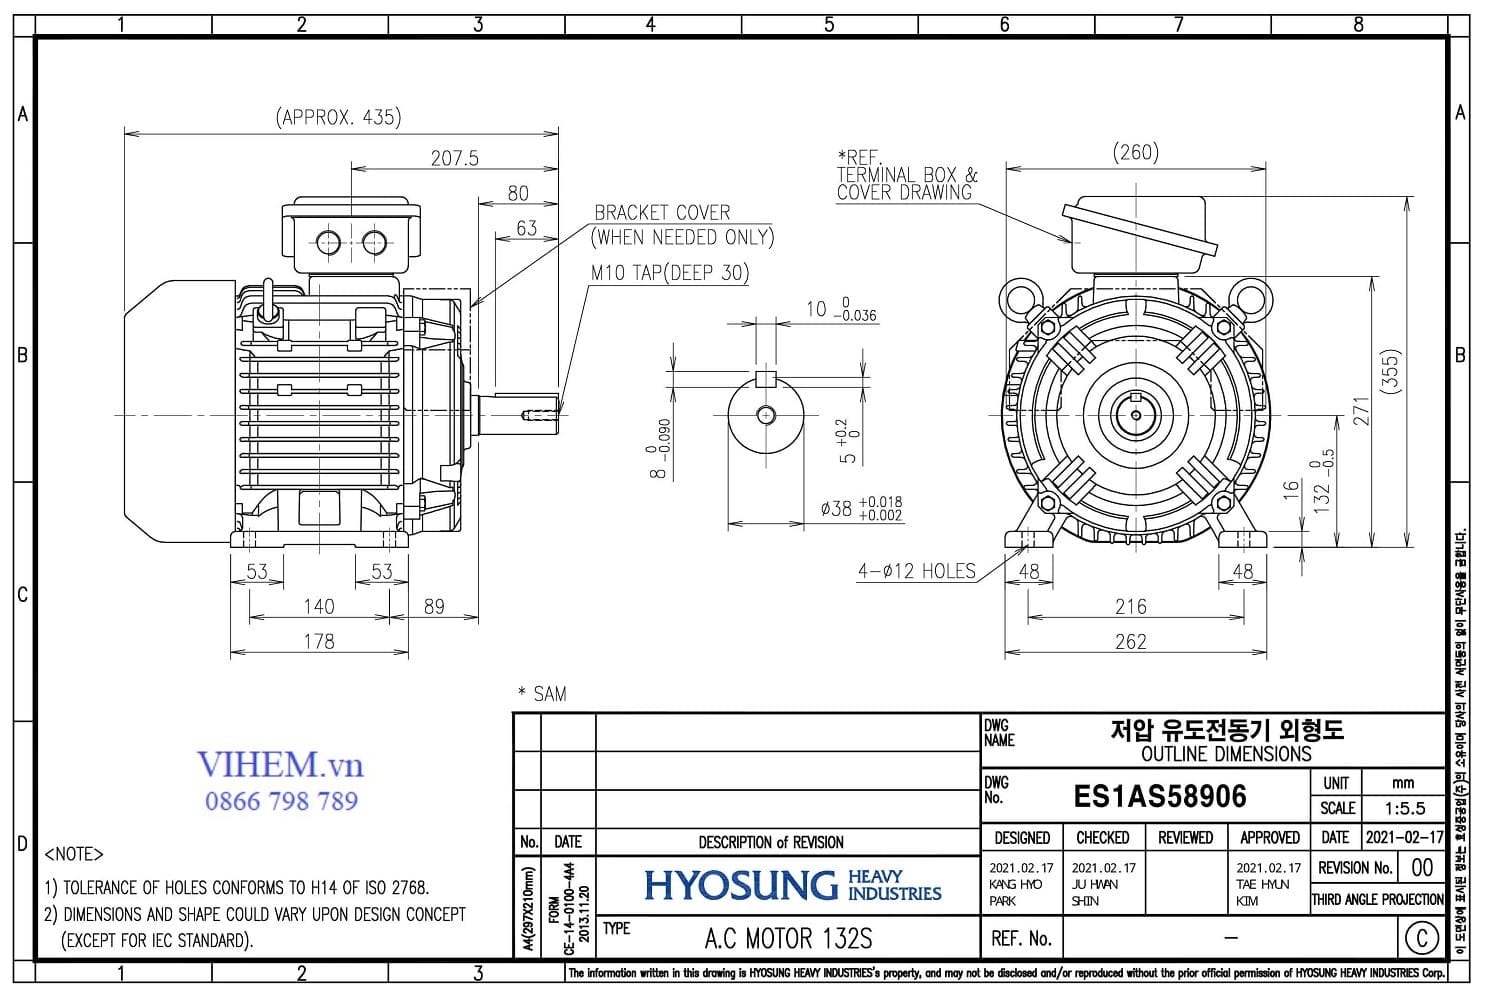 Kích thước lắp đặt & thông số kỹ thuật HYOSUNG motor 5.5kW - 2P (3000rpm)